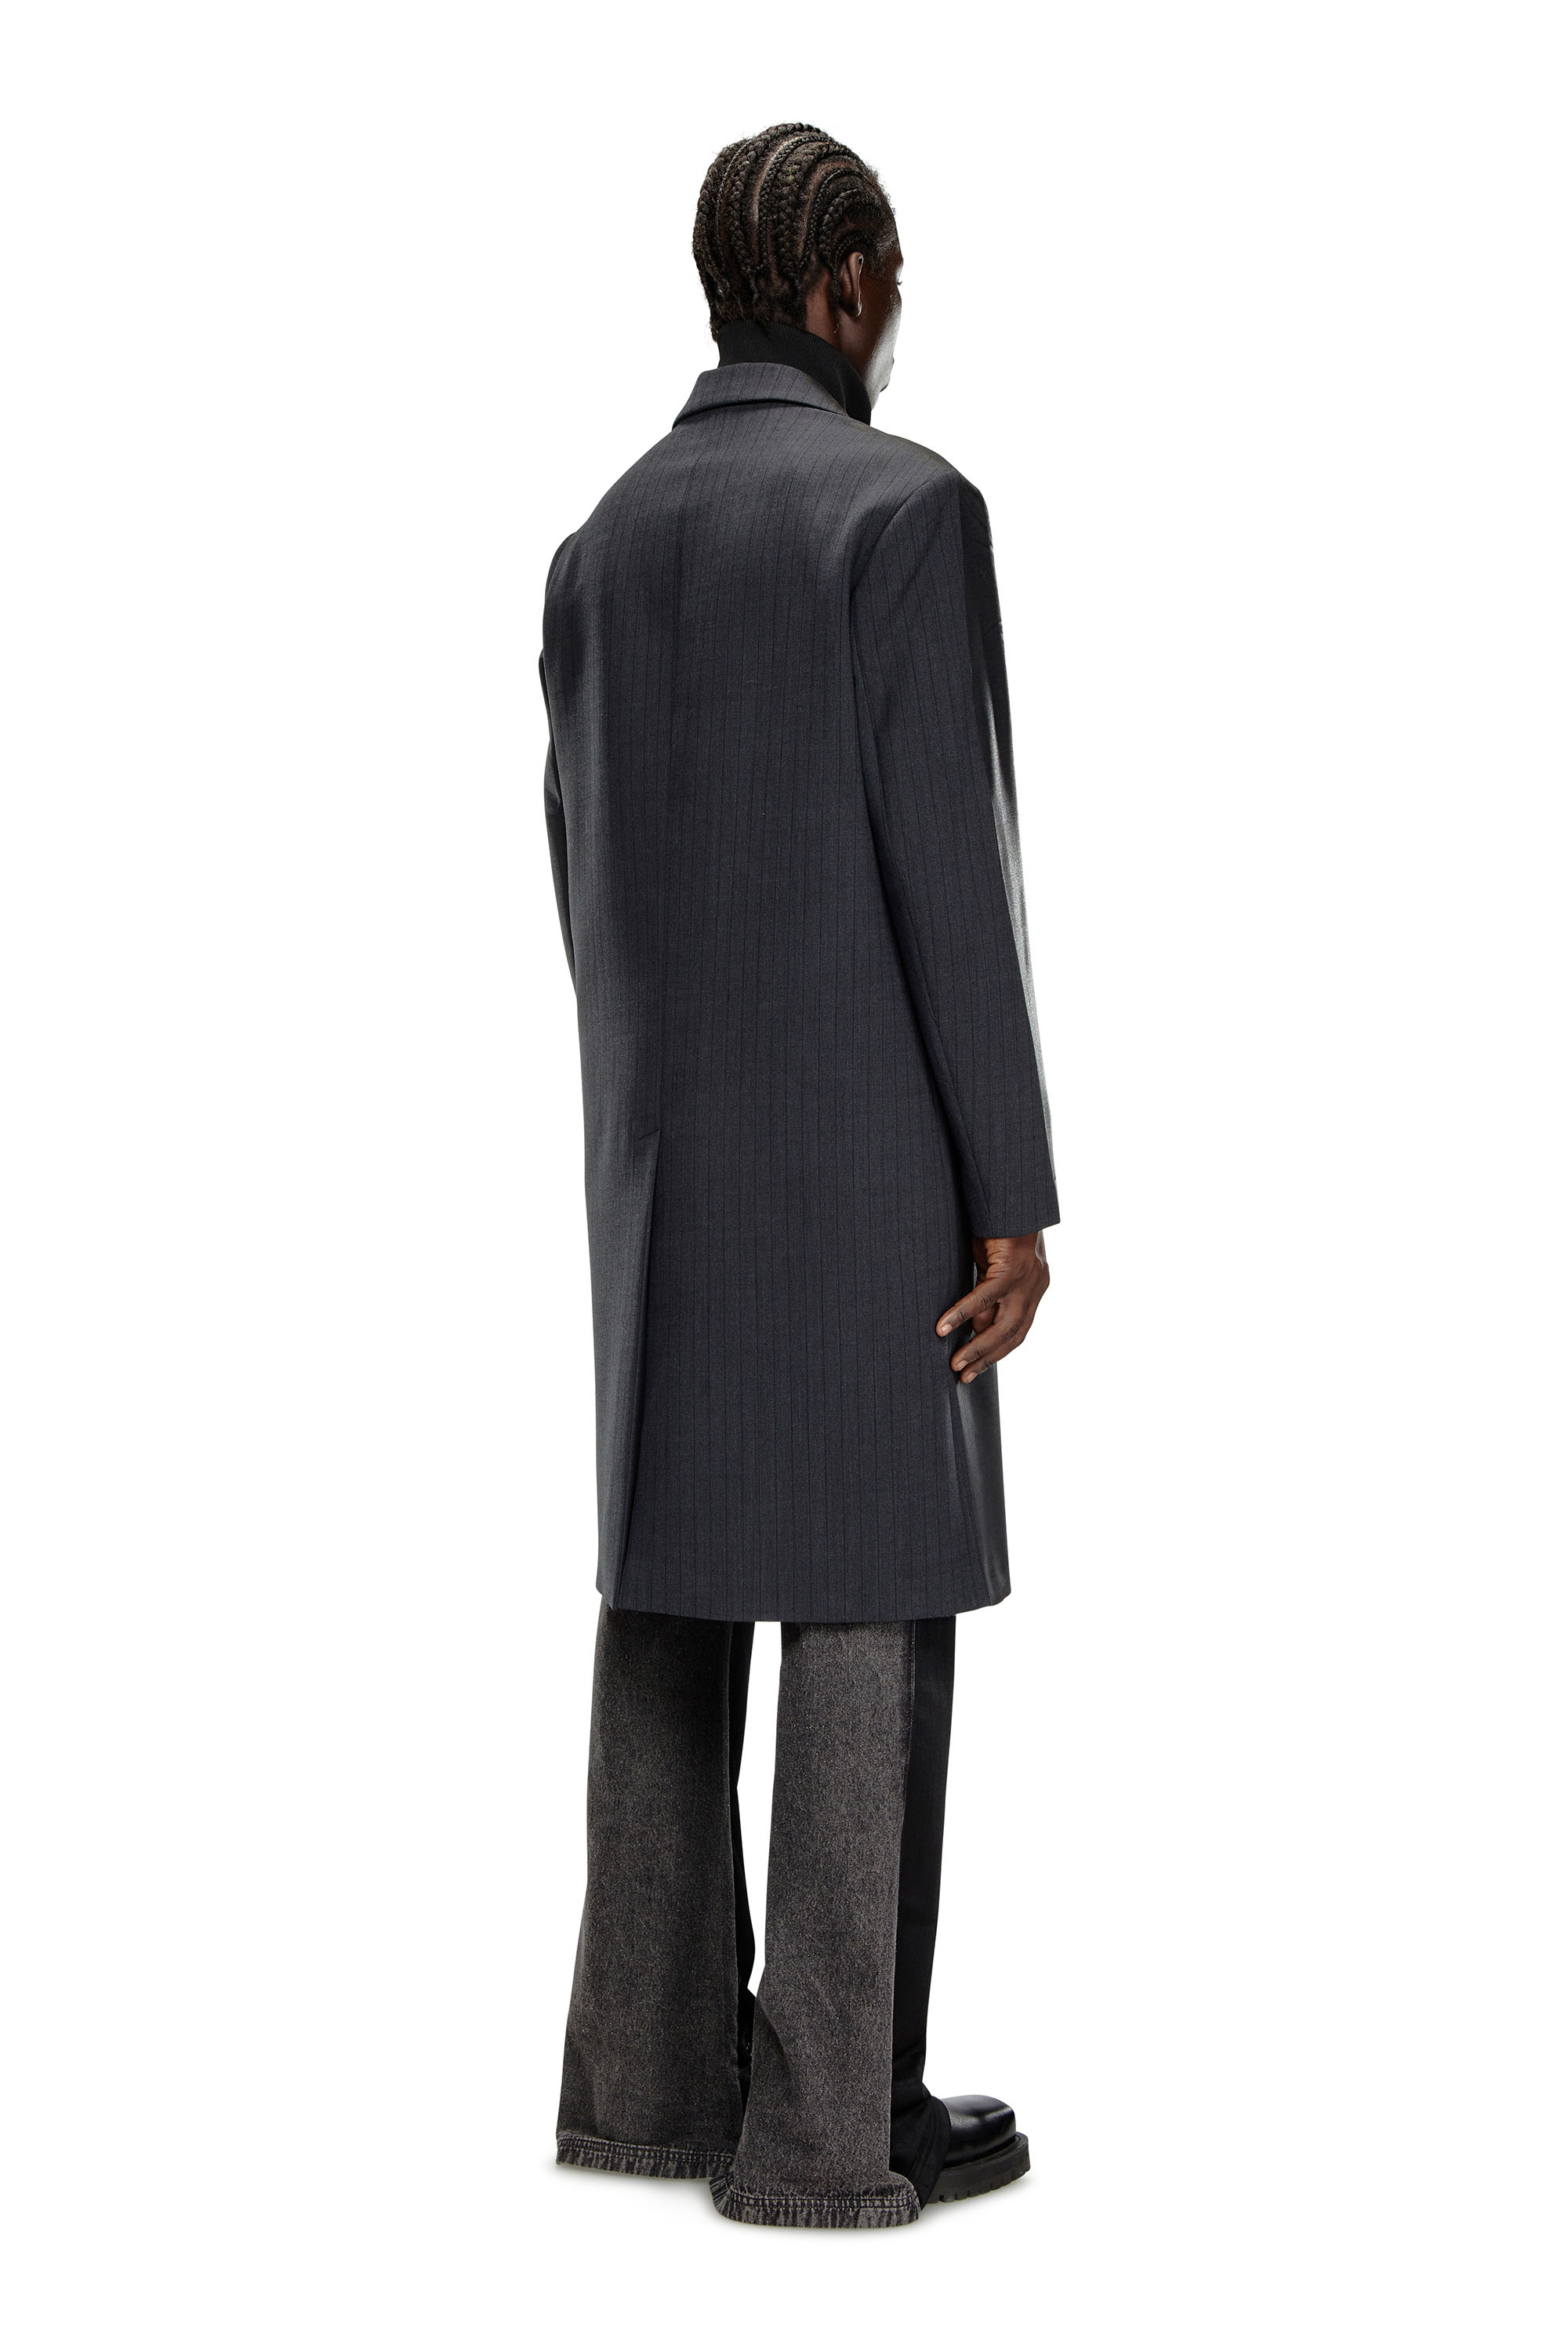 Diesel - J-DENNER, Male Coat in pinstriped cool wool in Black - Image 4